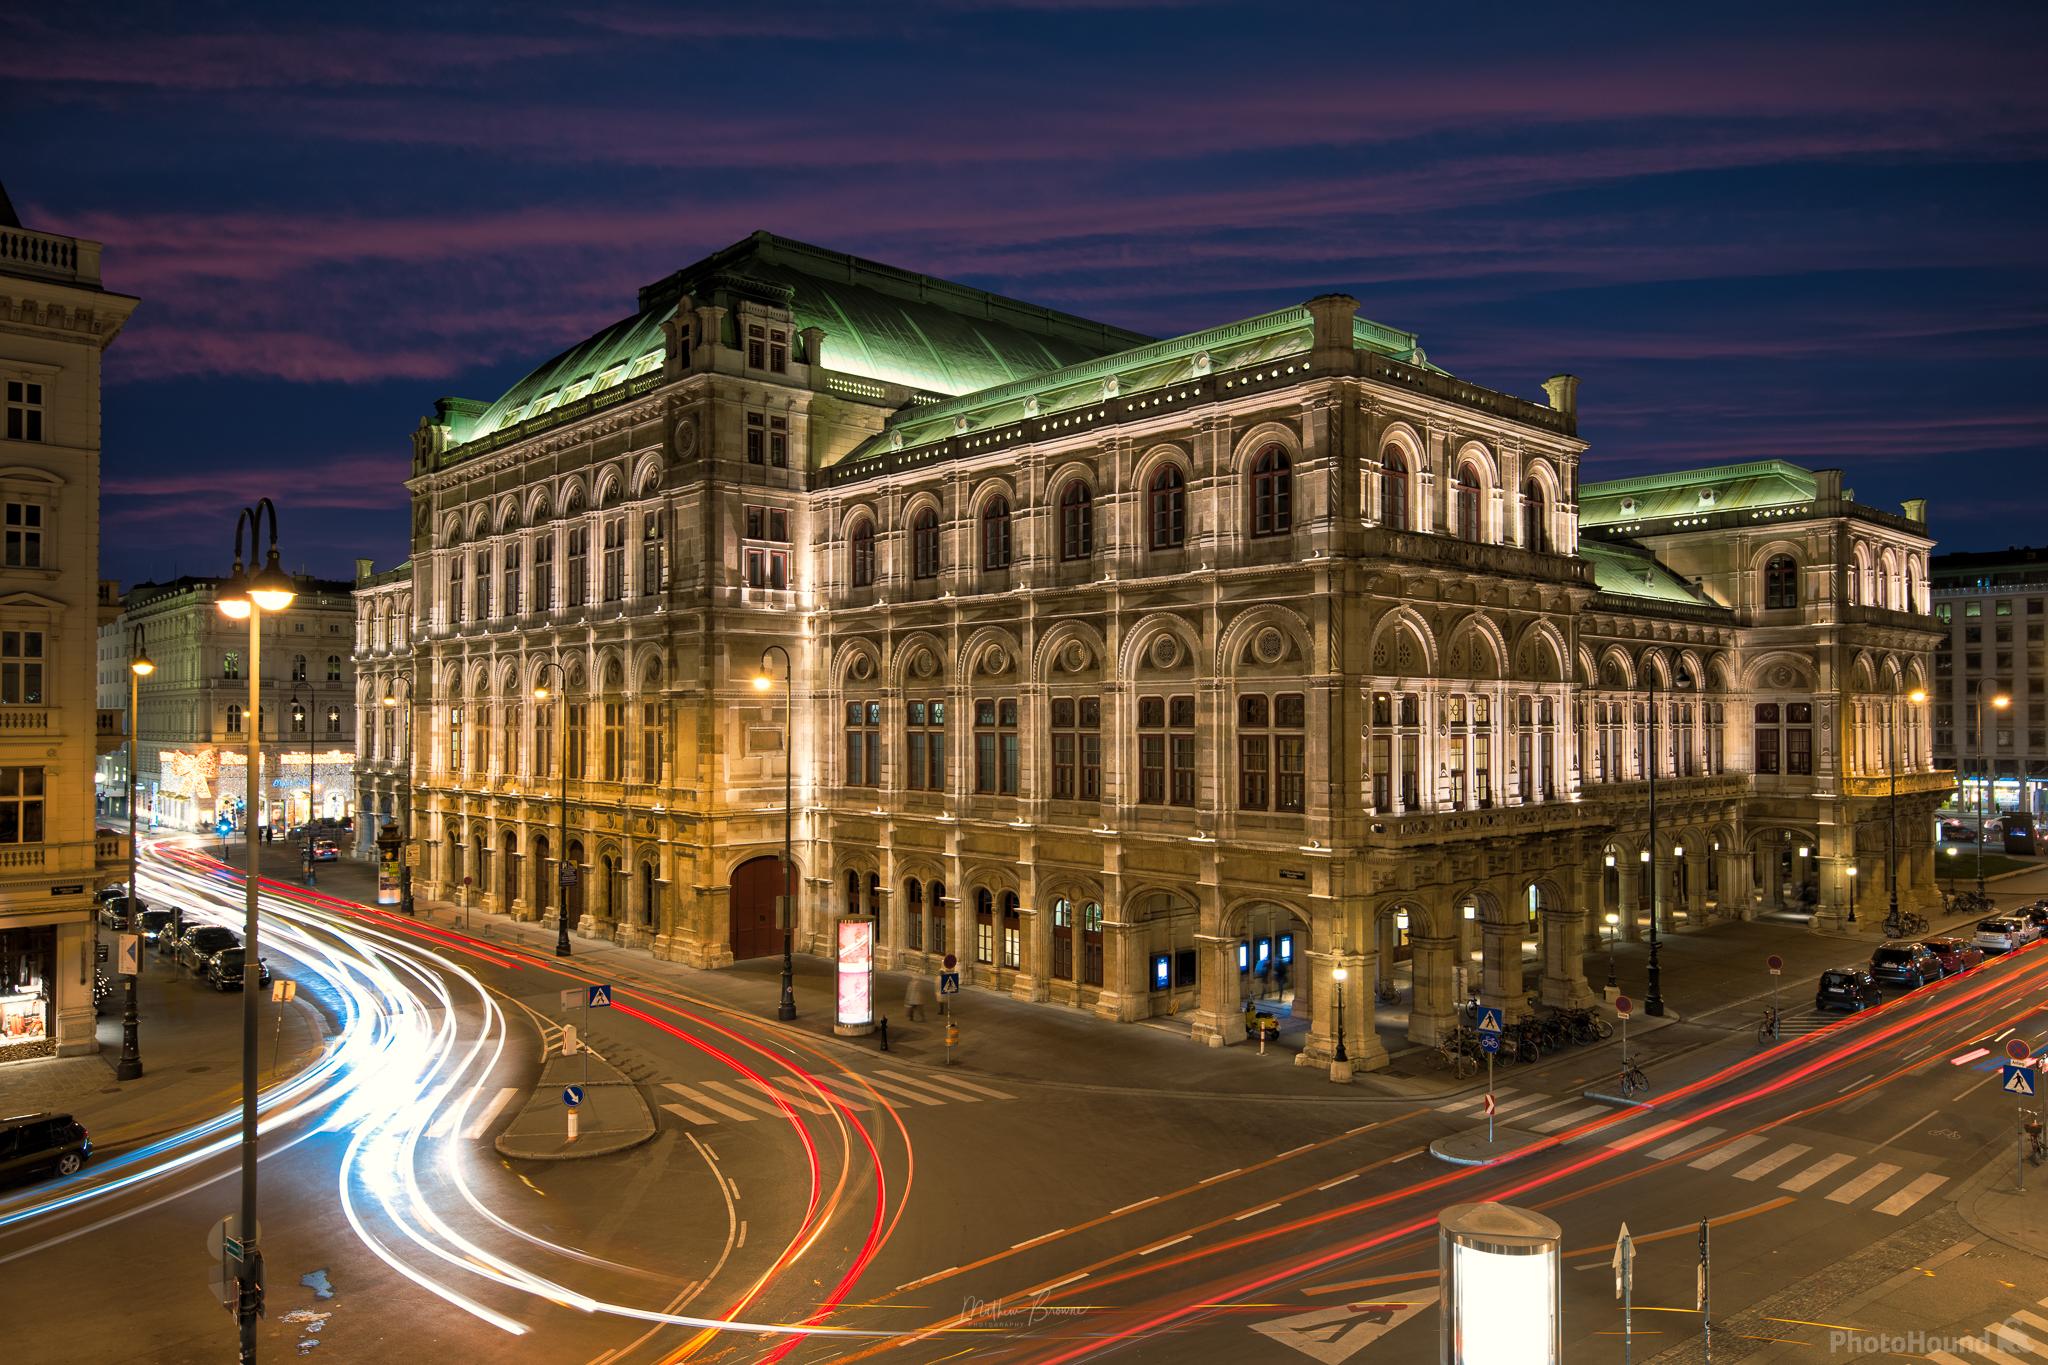 Image of Vienna State Opera by Mathew Browne